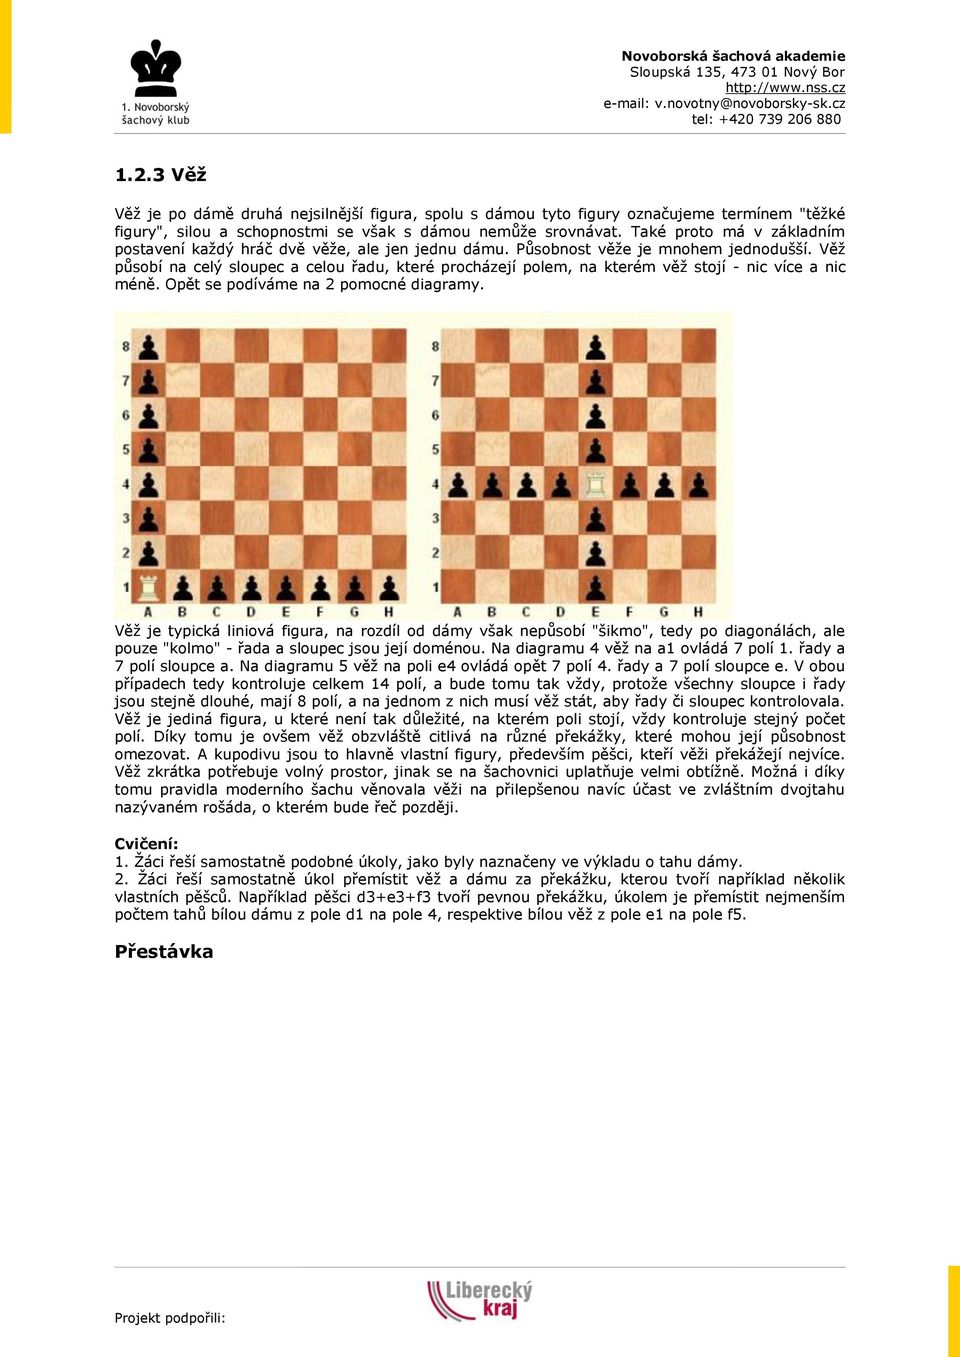 Lekce 2 - Dáma a věž, mat a pat. 2.1 Kontrola domácího úkolu, krátké  opakování šachové notace. 2.2 Dáma - PDF Stažení zdarma